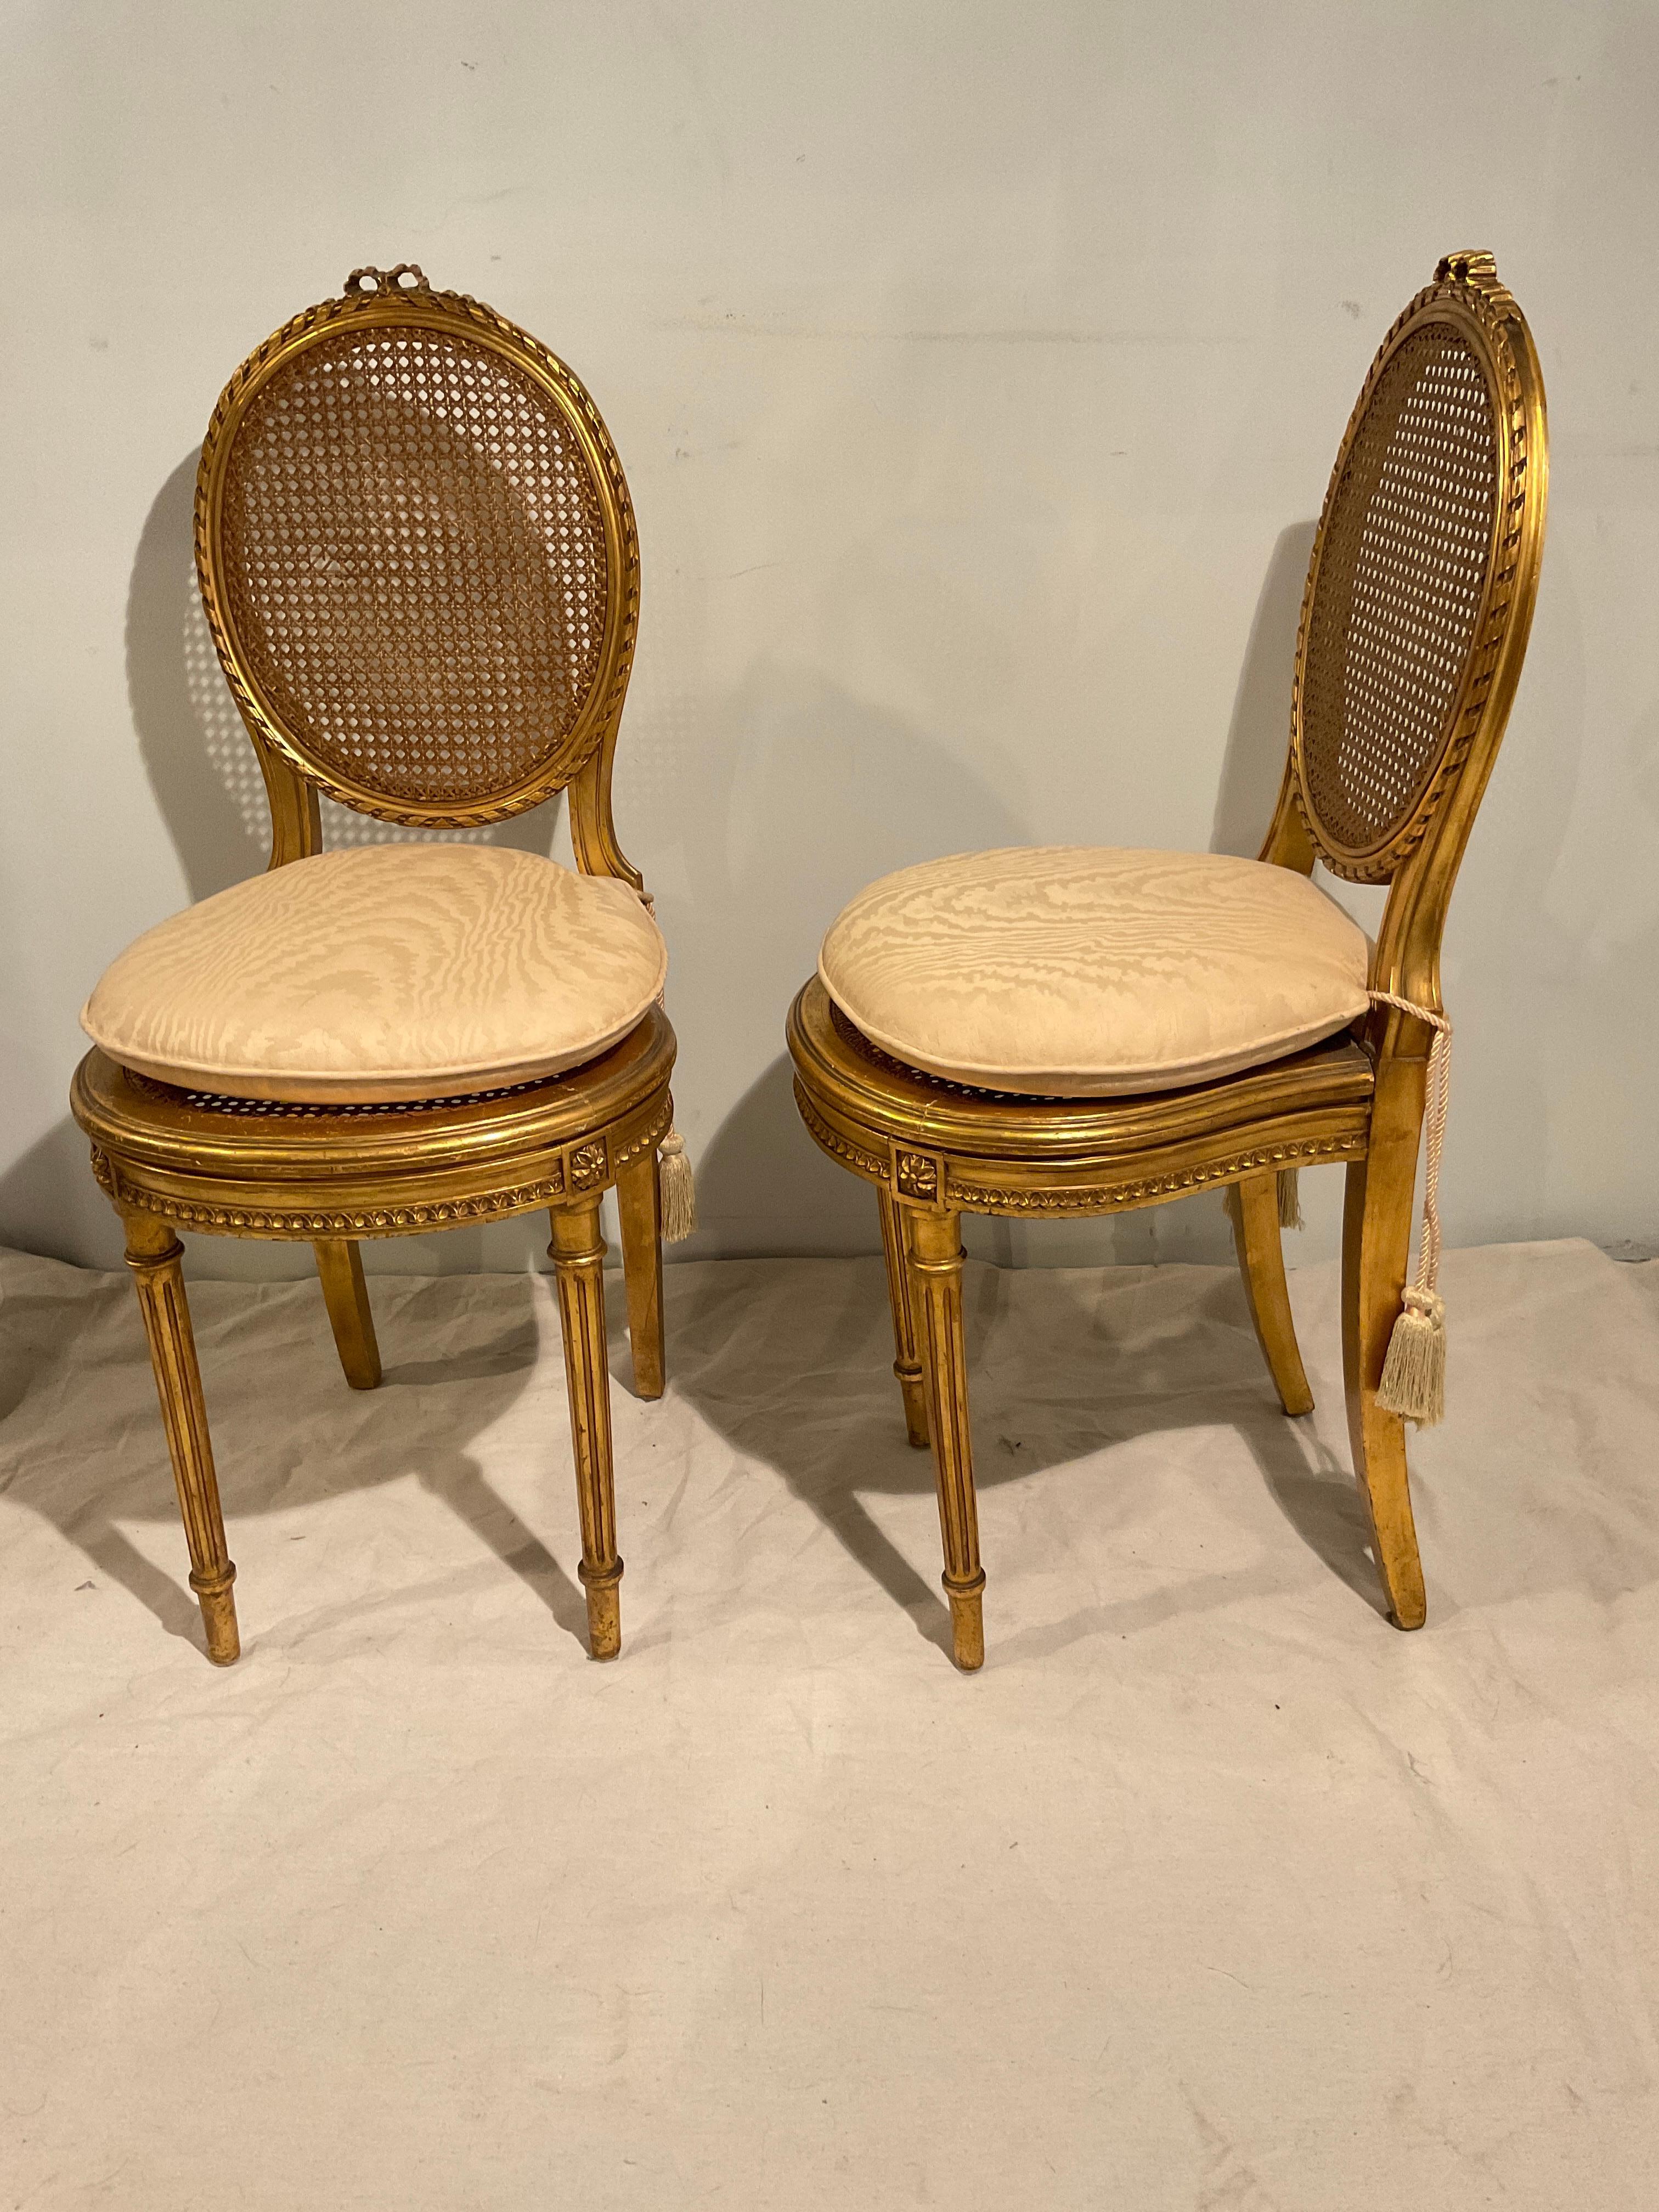 Paire de petites chaises Louis XVI en bois sculpté et doré, datant des années 1920.